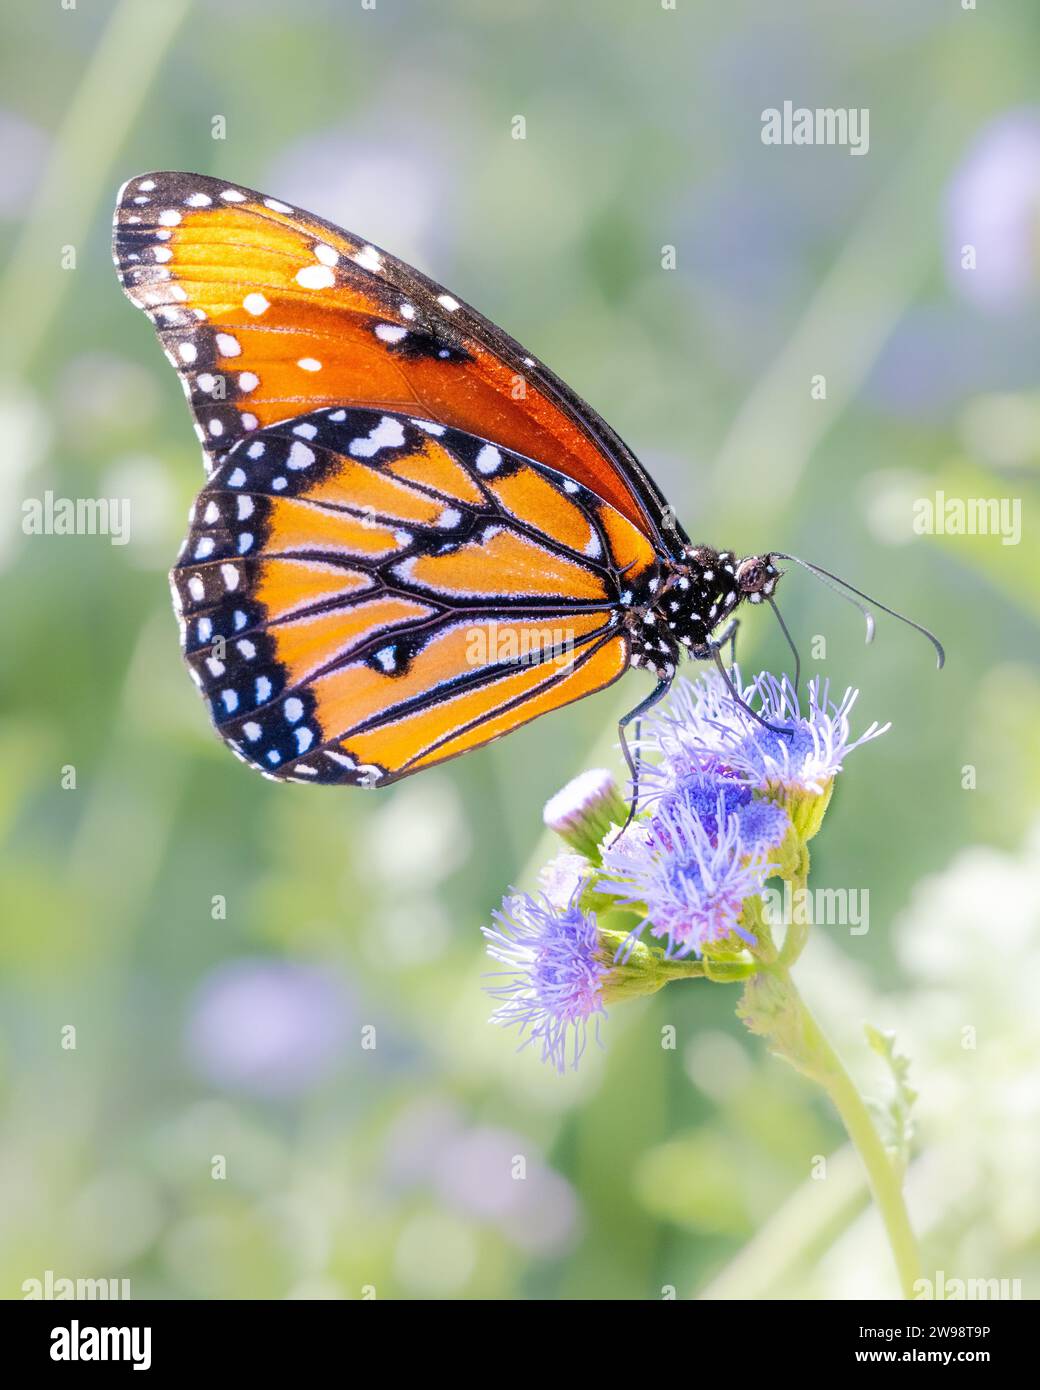 Regina farfalla Danaus gilippus che si nutrono di nettare di fiori da giardino - Müllerian imita l'arancio Monarch, noto anche come insetto mimico - dettaglio alare esteso proboscis Foto Stock